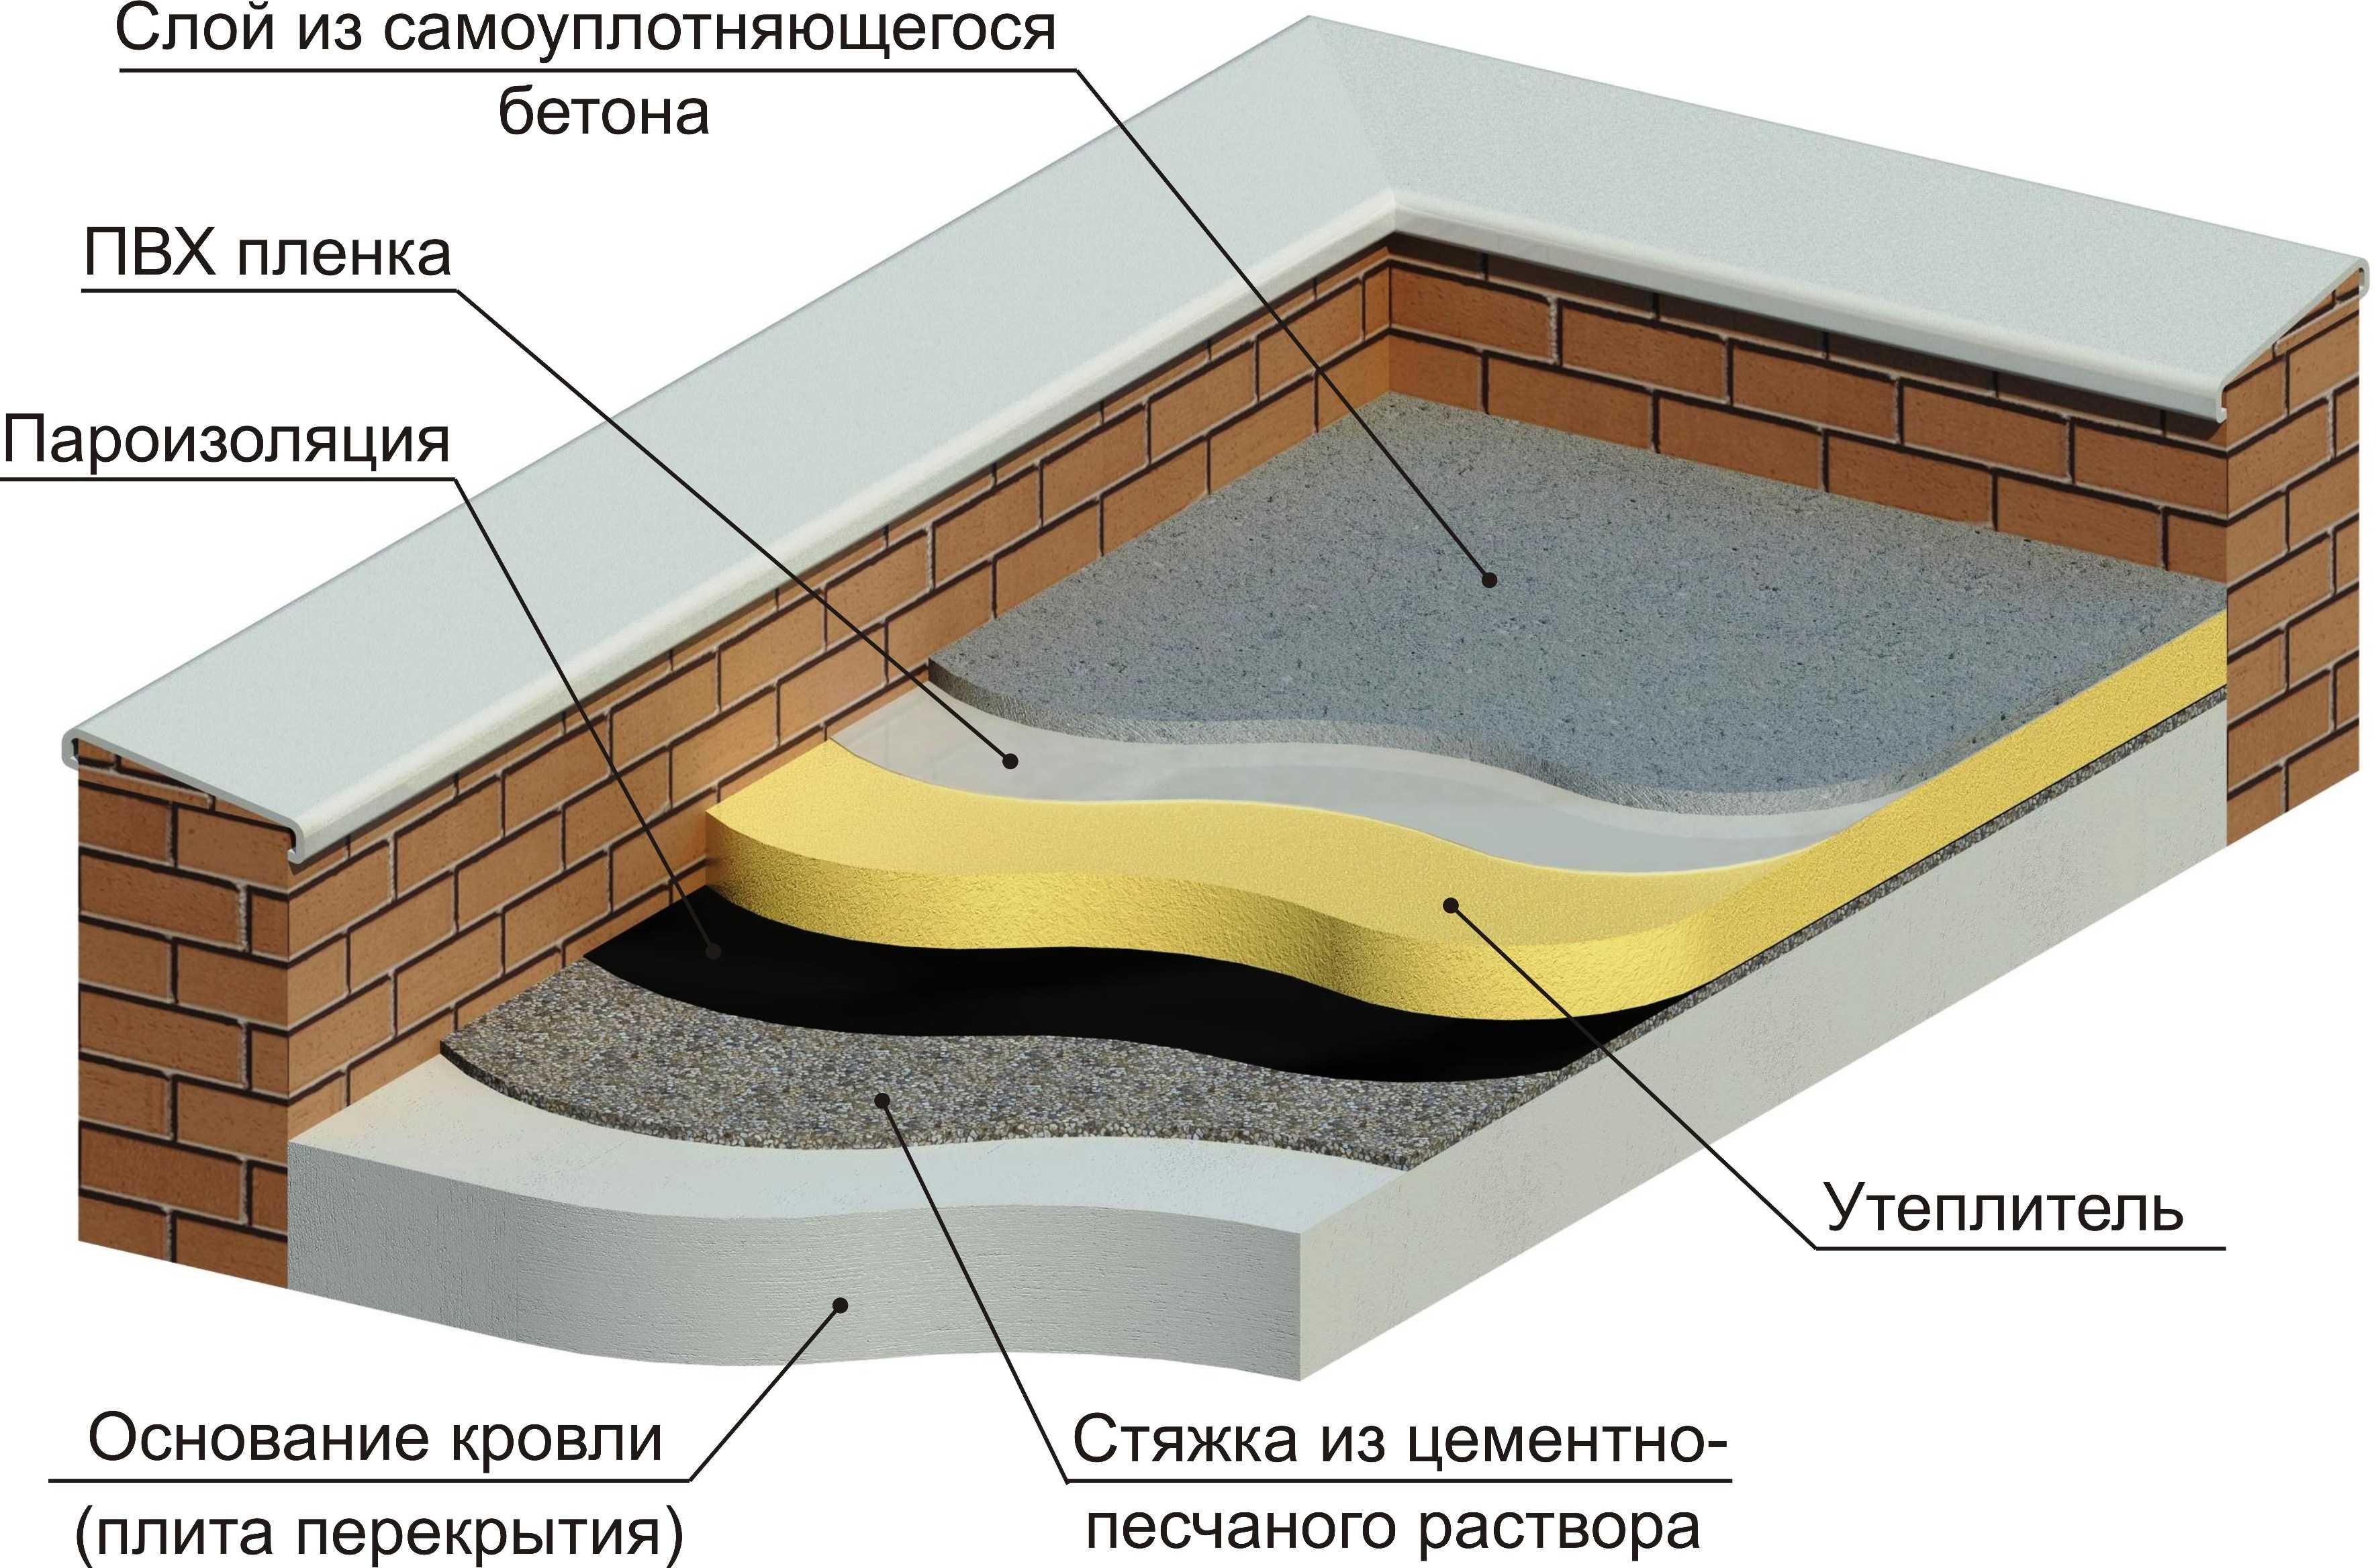 Самоуплотняющийся бетон - что это такое (классификация, состав)